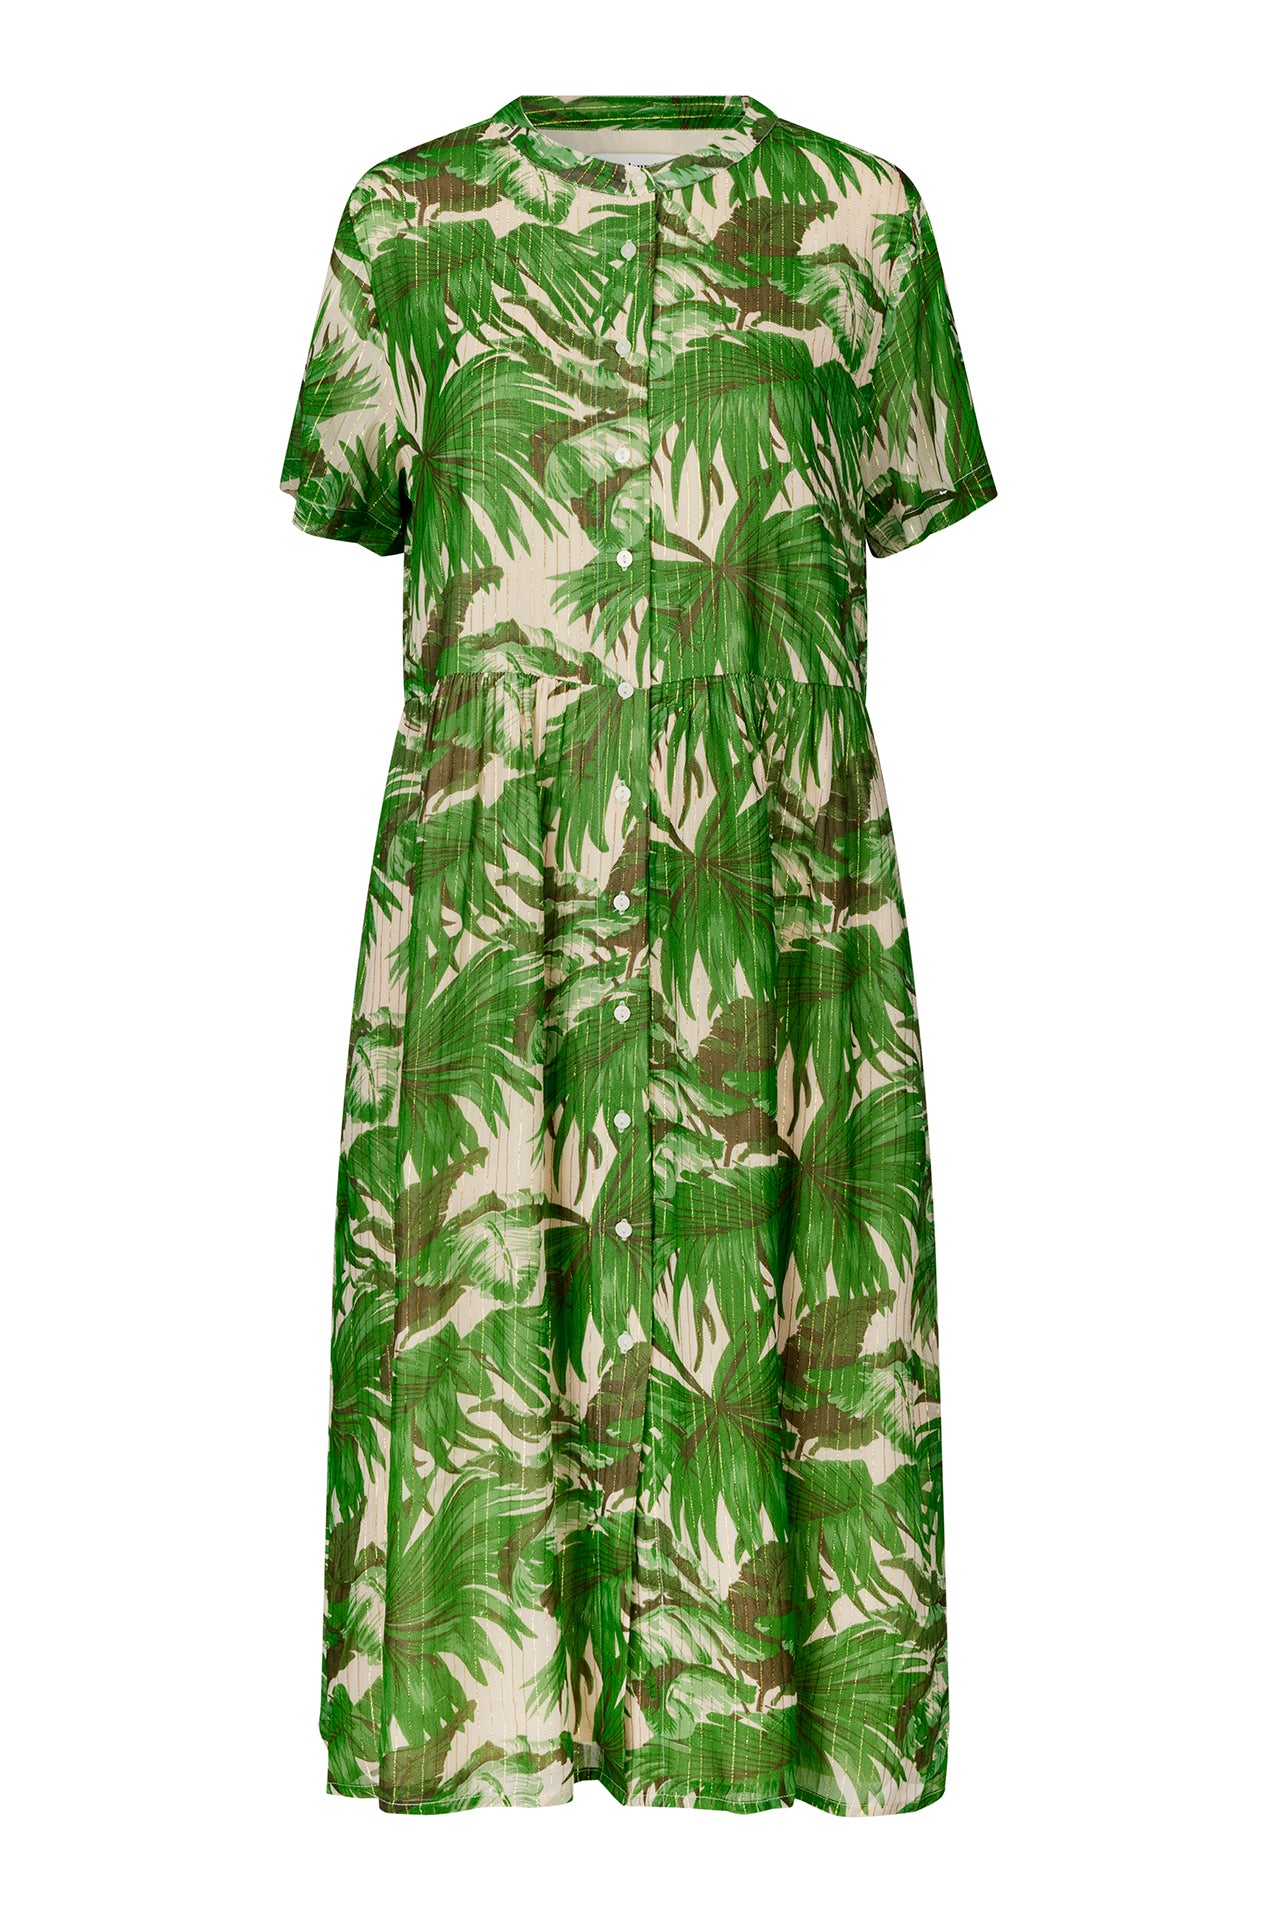 Lollys Laundry AliyaLL Midi Dress SS Dress 40 Green